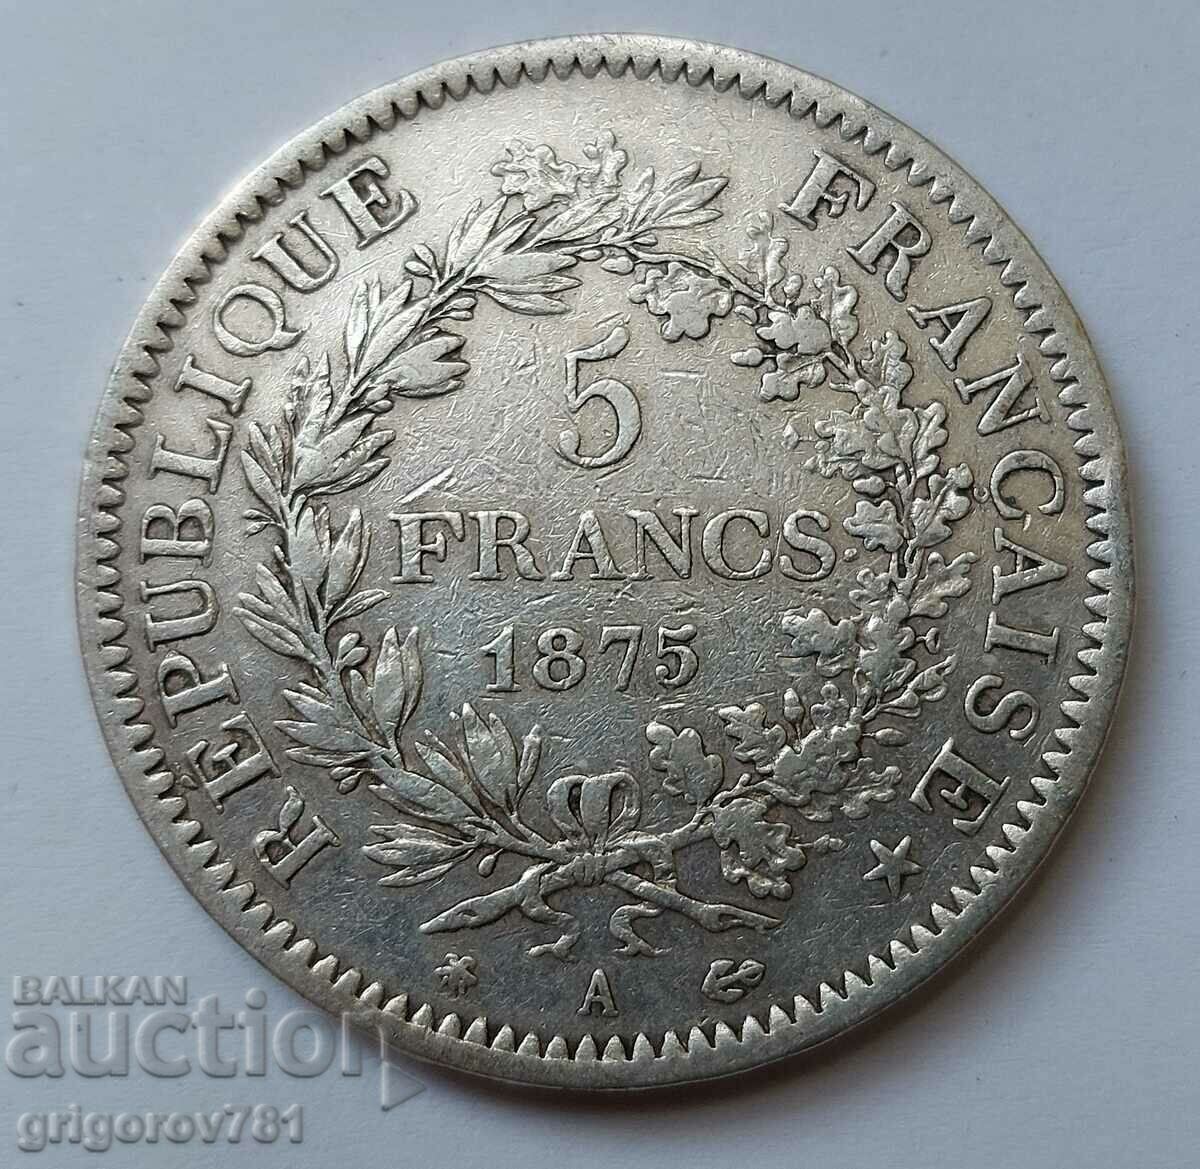 5 Franci Argint Franta 1975 - Moneda de argint #83